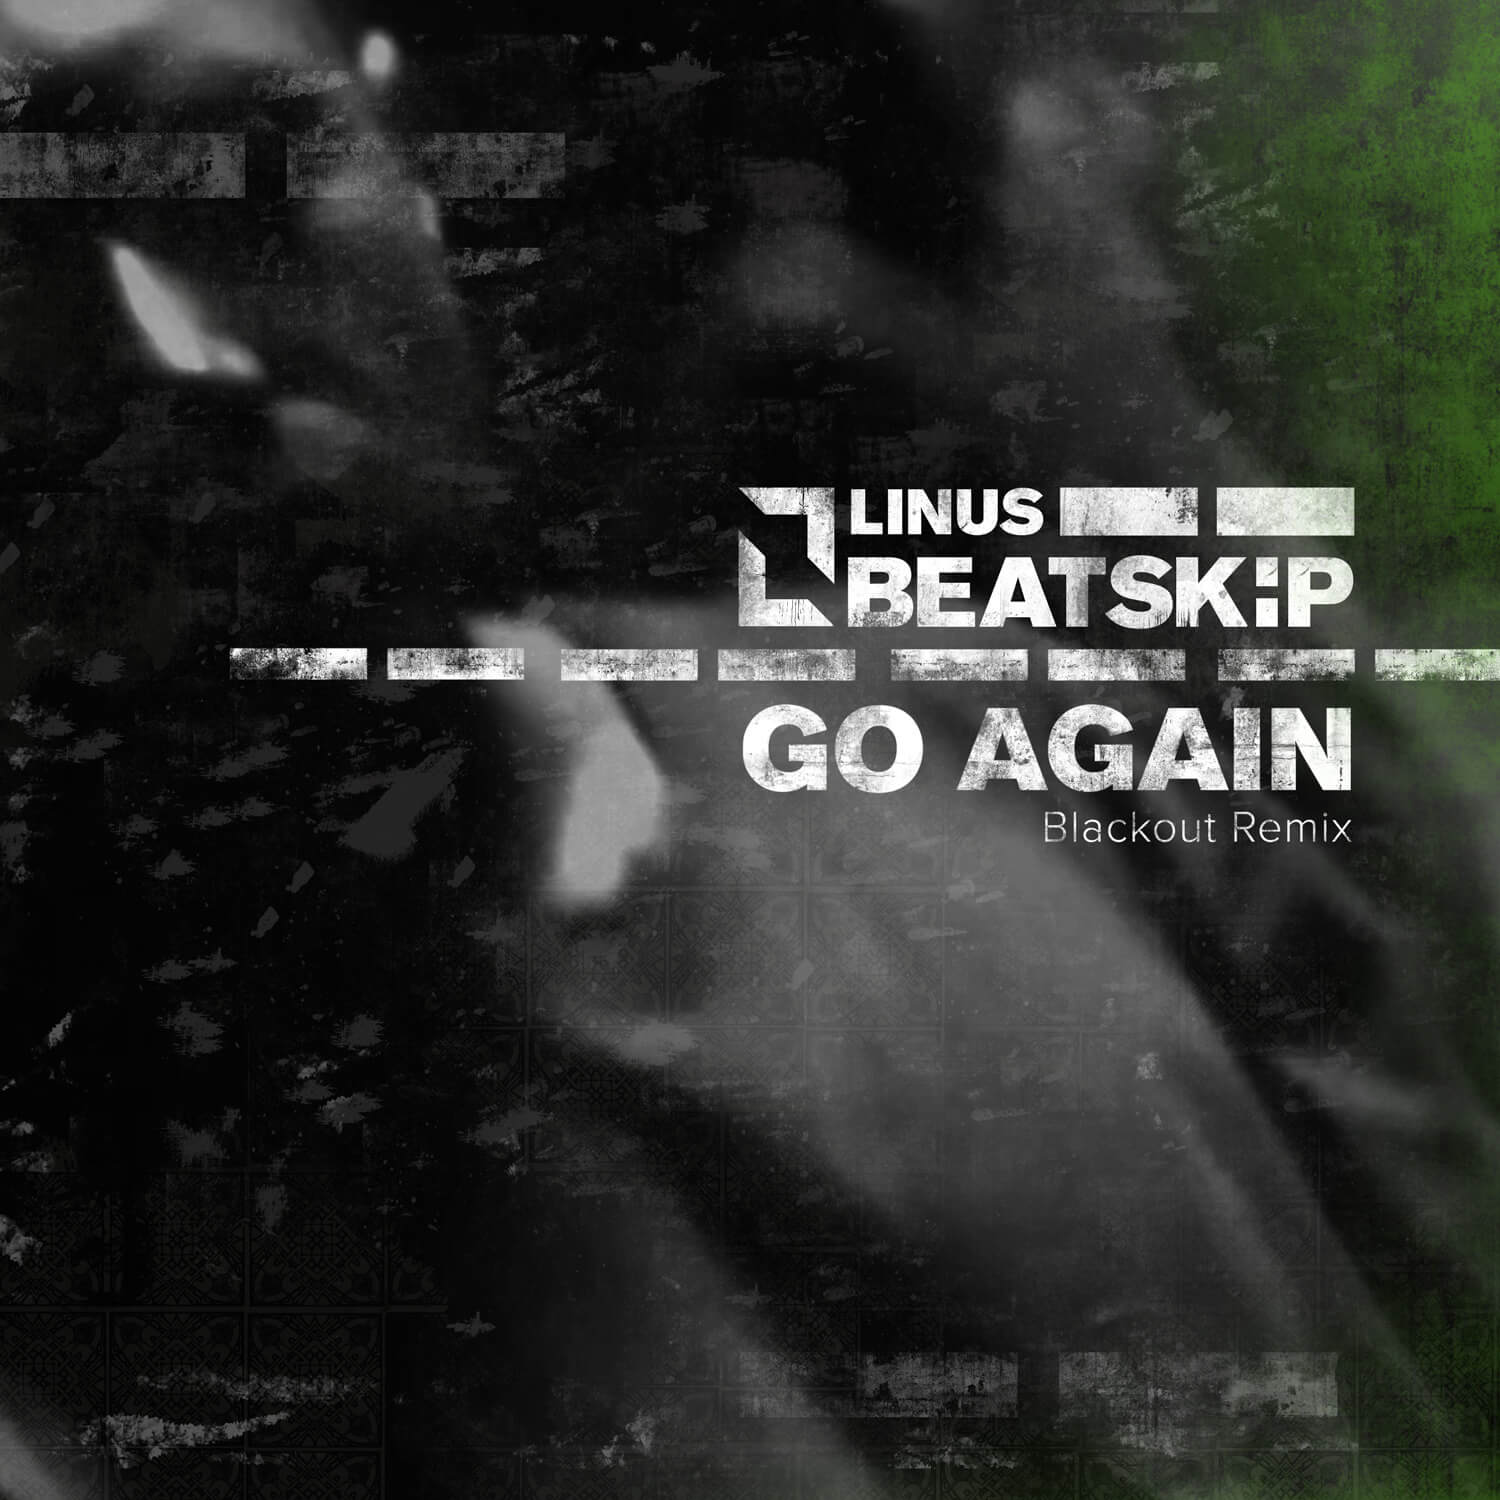 Go Again Blackout Remix Linus Btskip Hard Techno